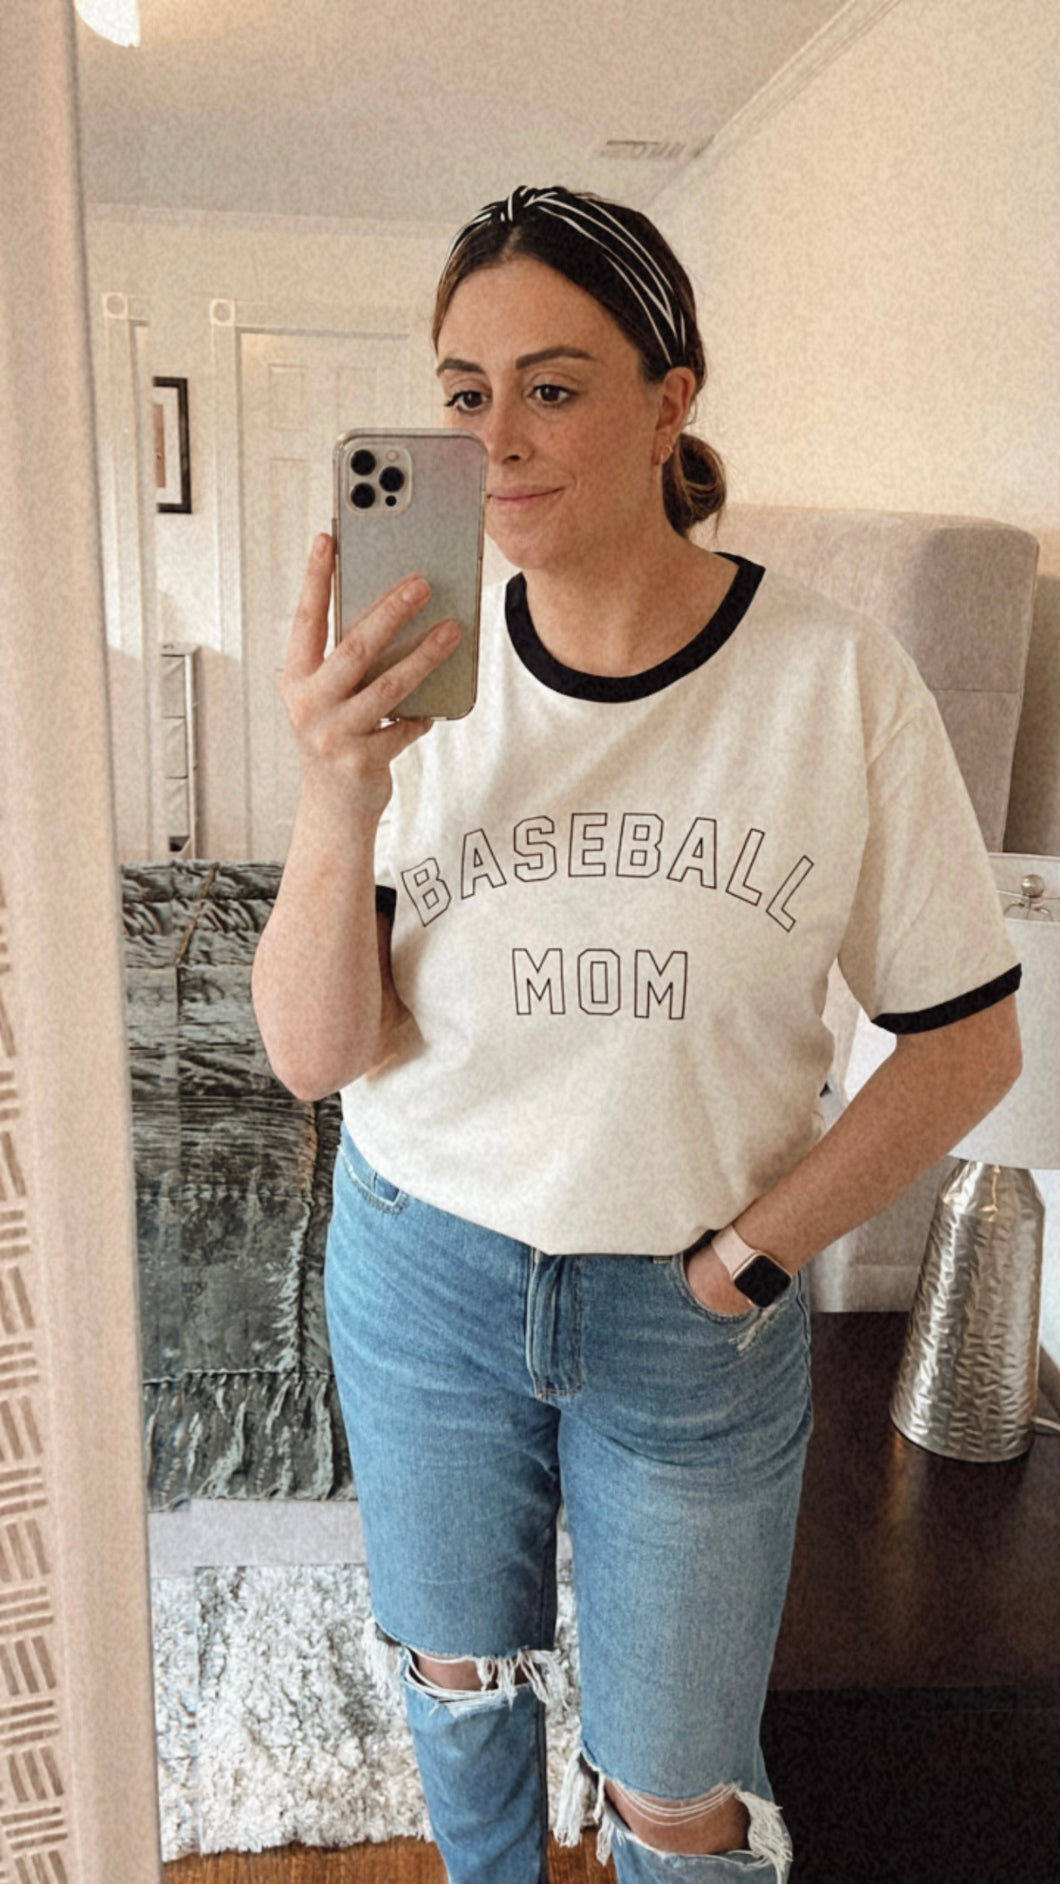 Baseball Mom | Ringer Tee